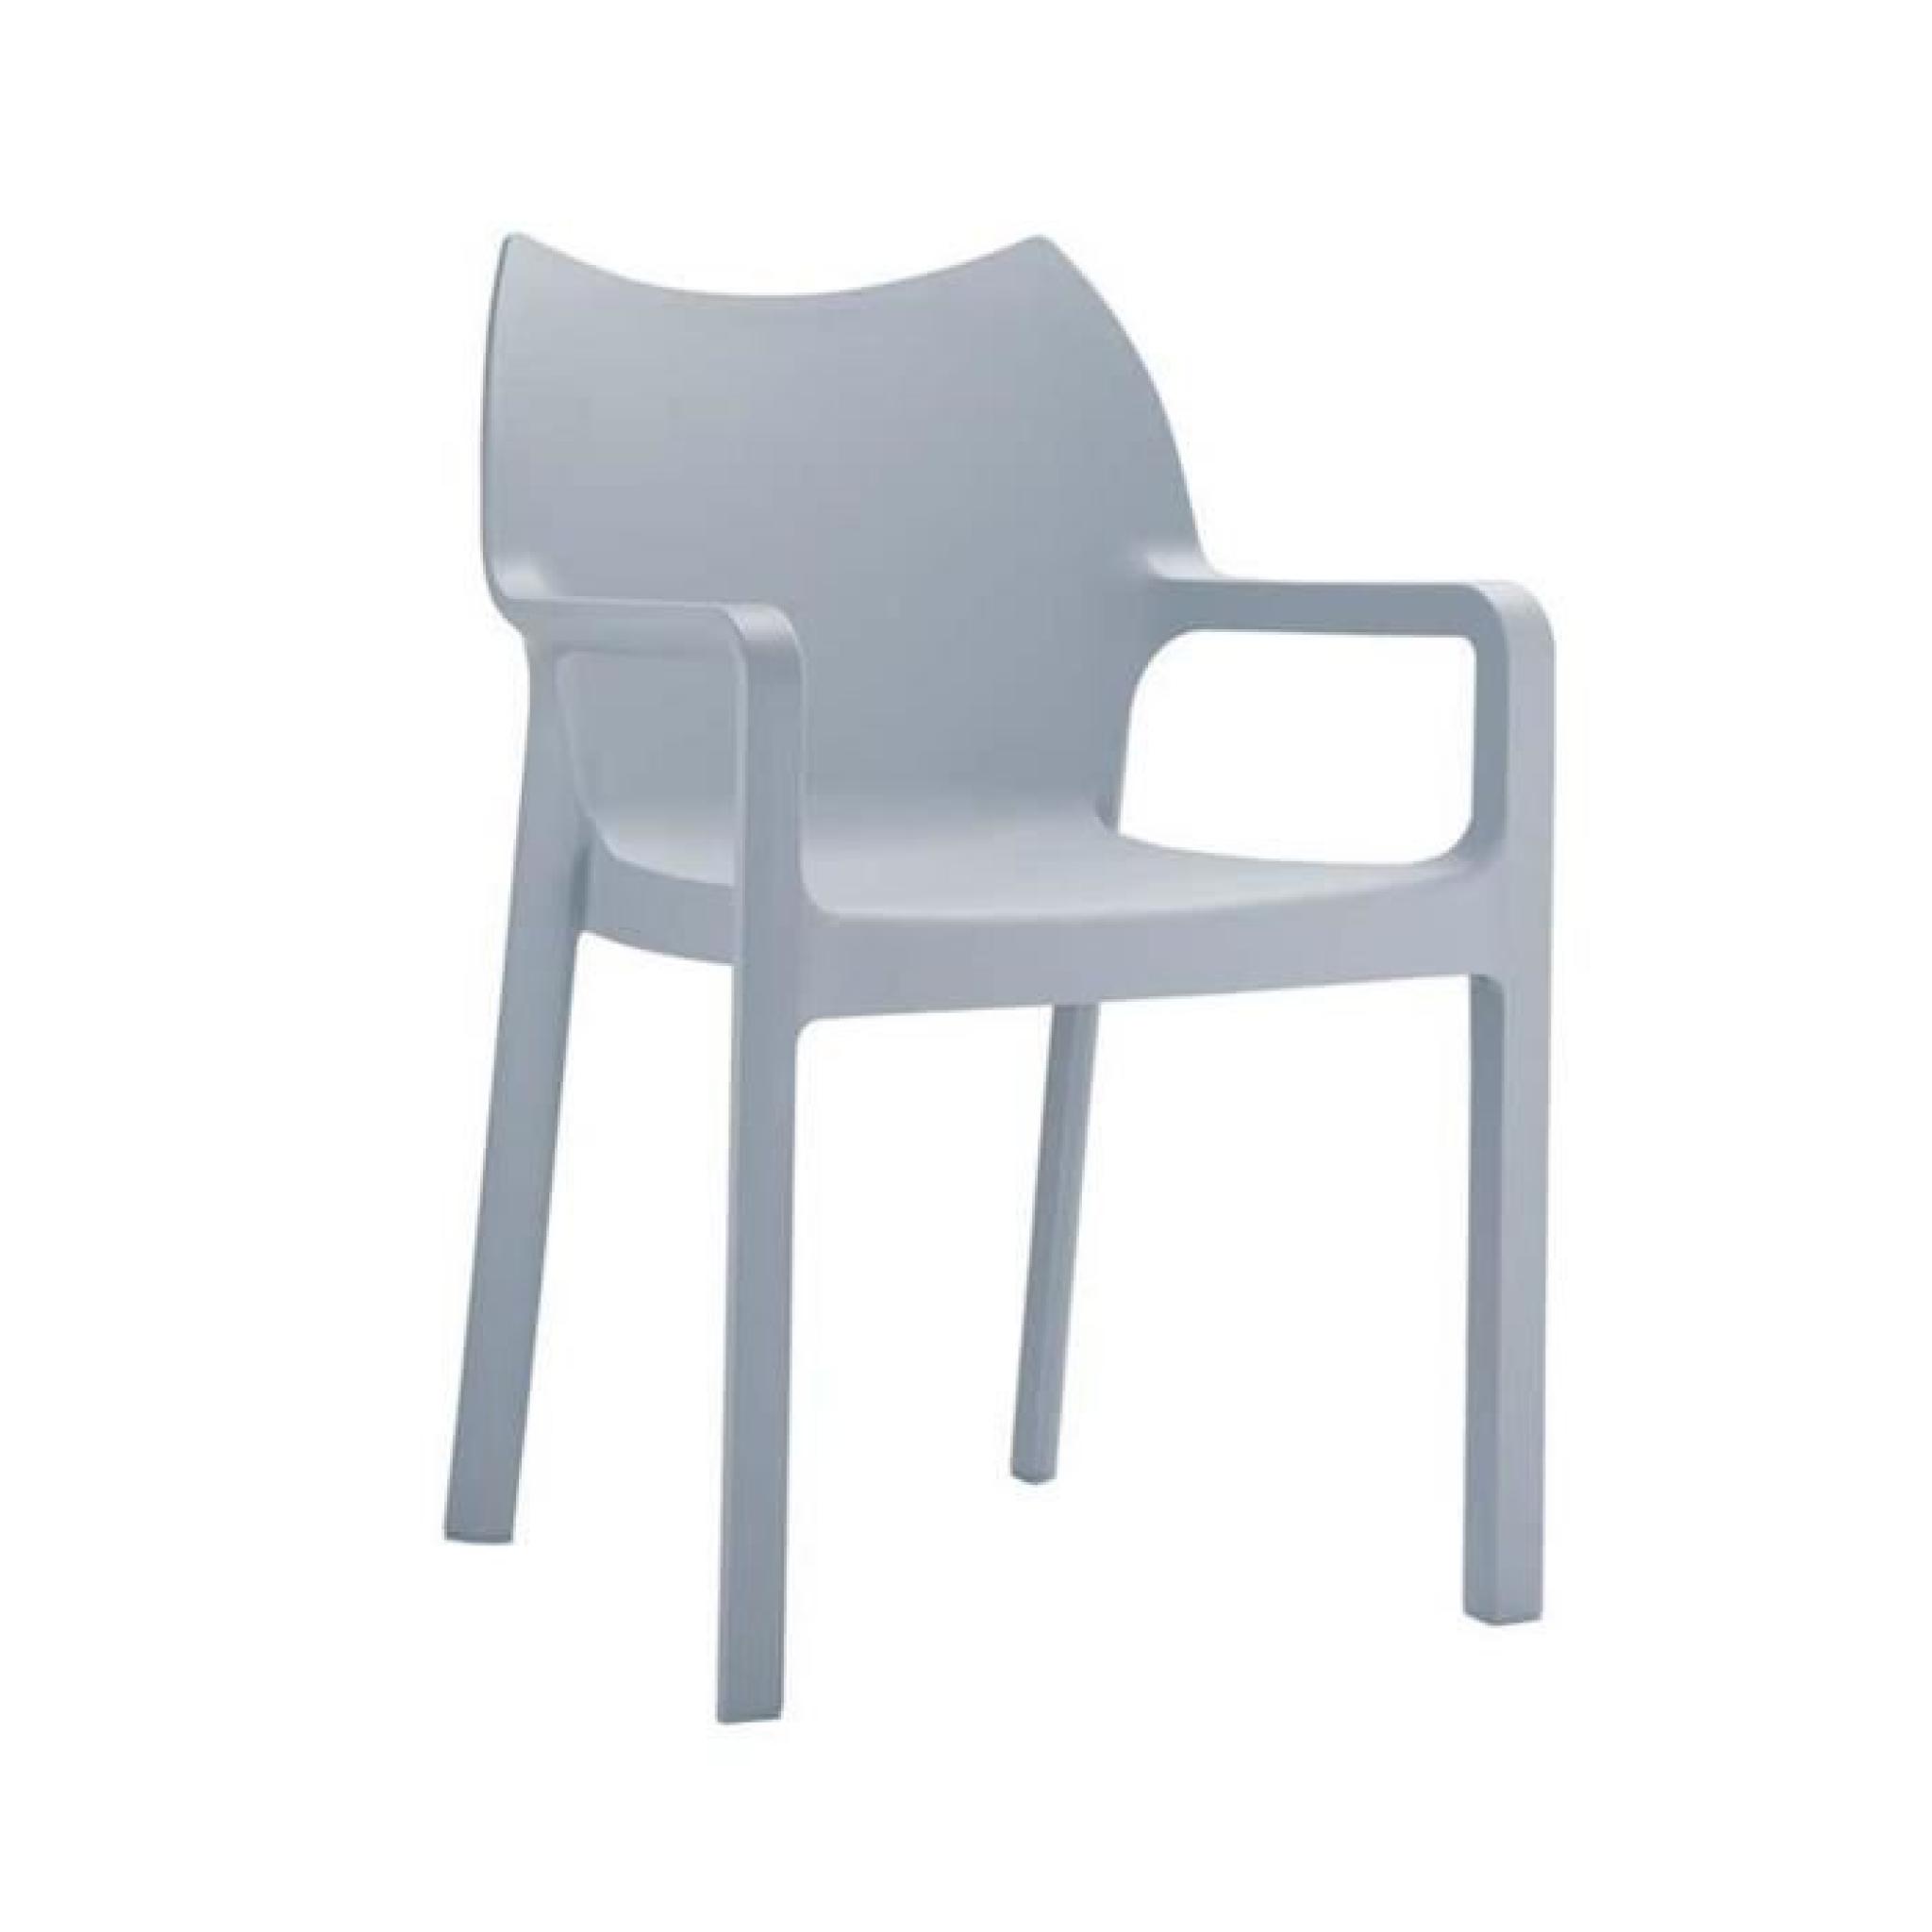 Chaise de jardin empilable en plastique gris clair - H84 x P53 x L57 cm